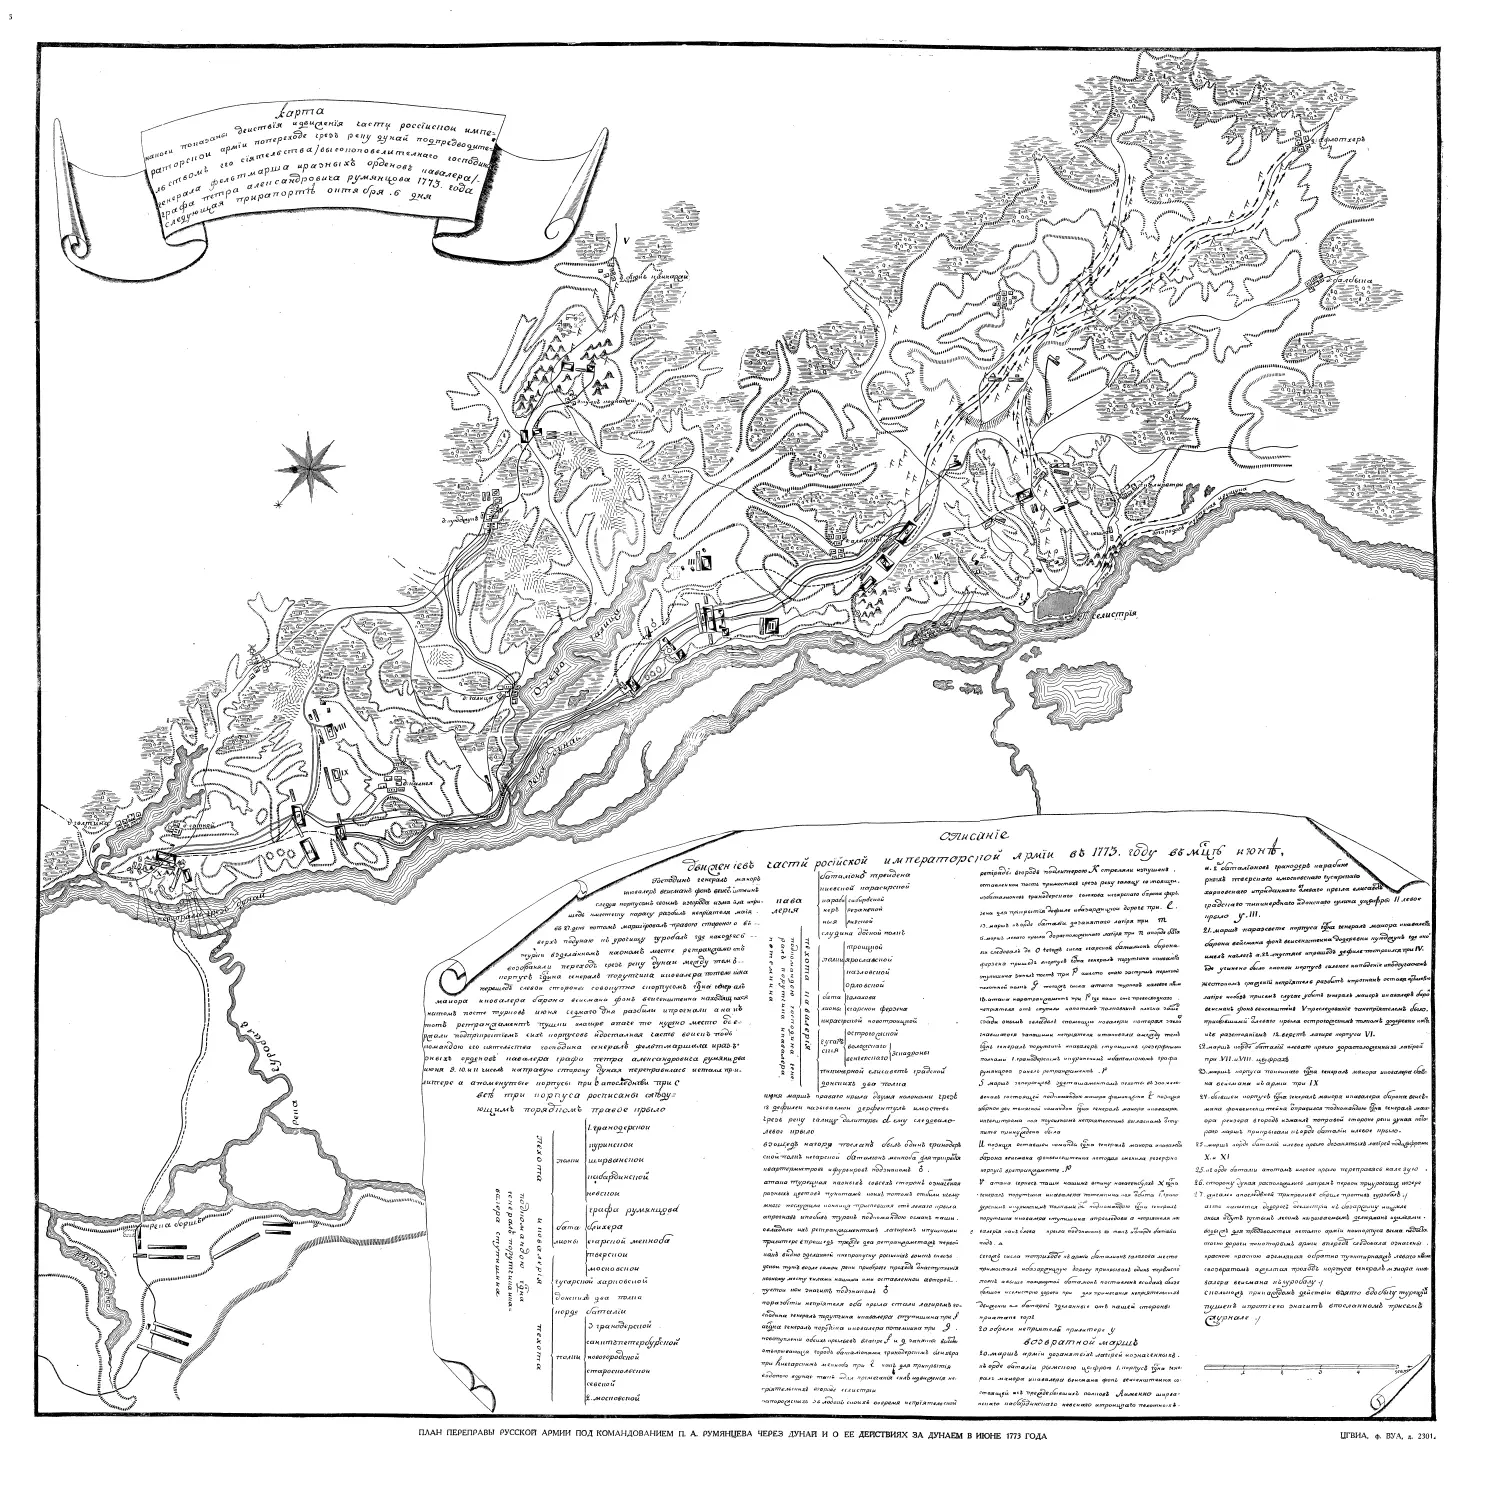 Карта действий за Дунаем русских войск под командованием П. А. Румянцева в июне 1773 года